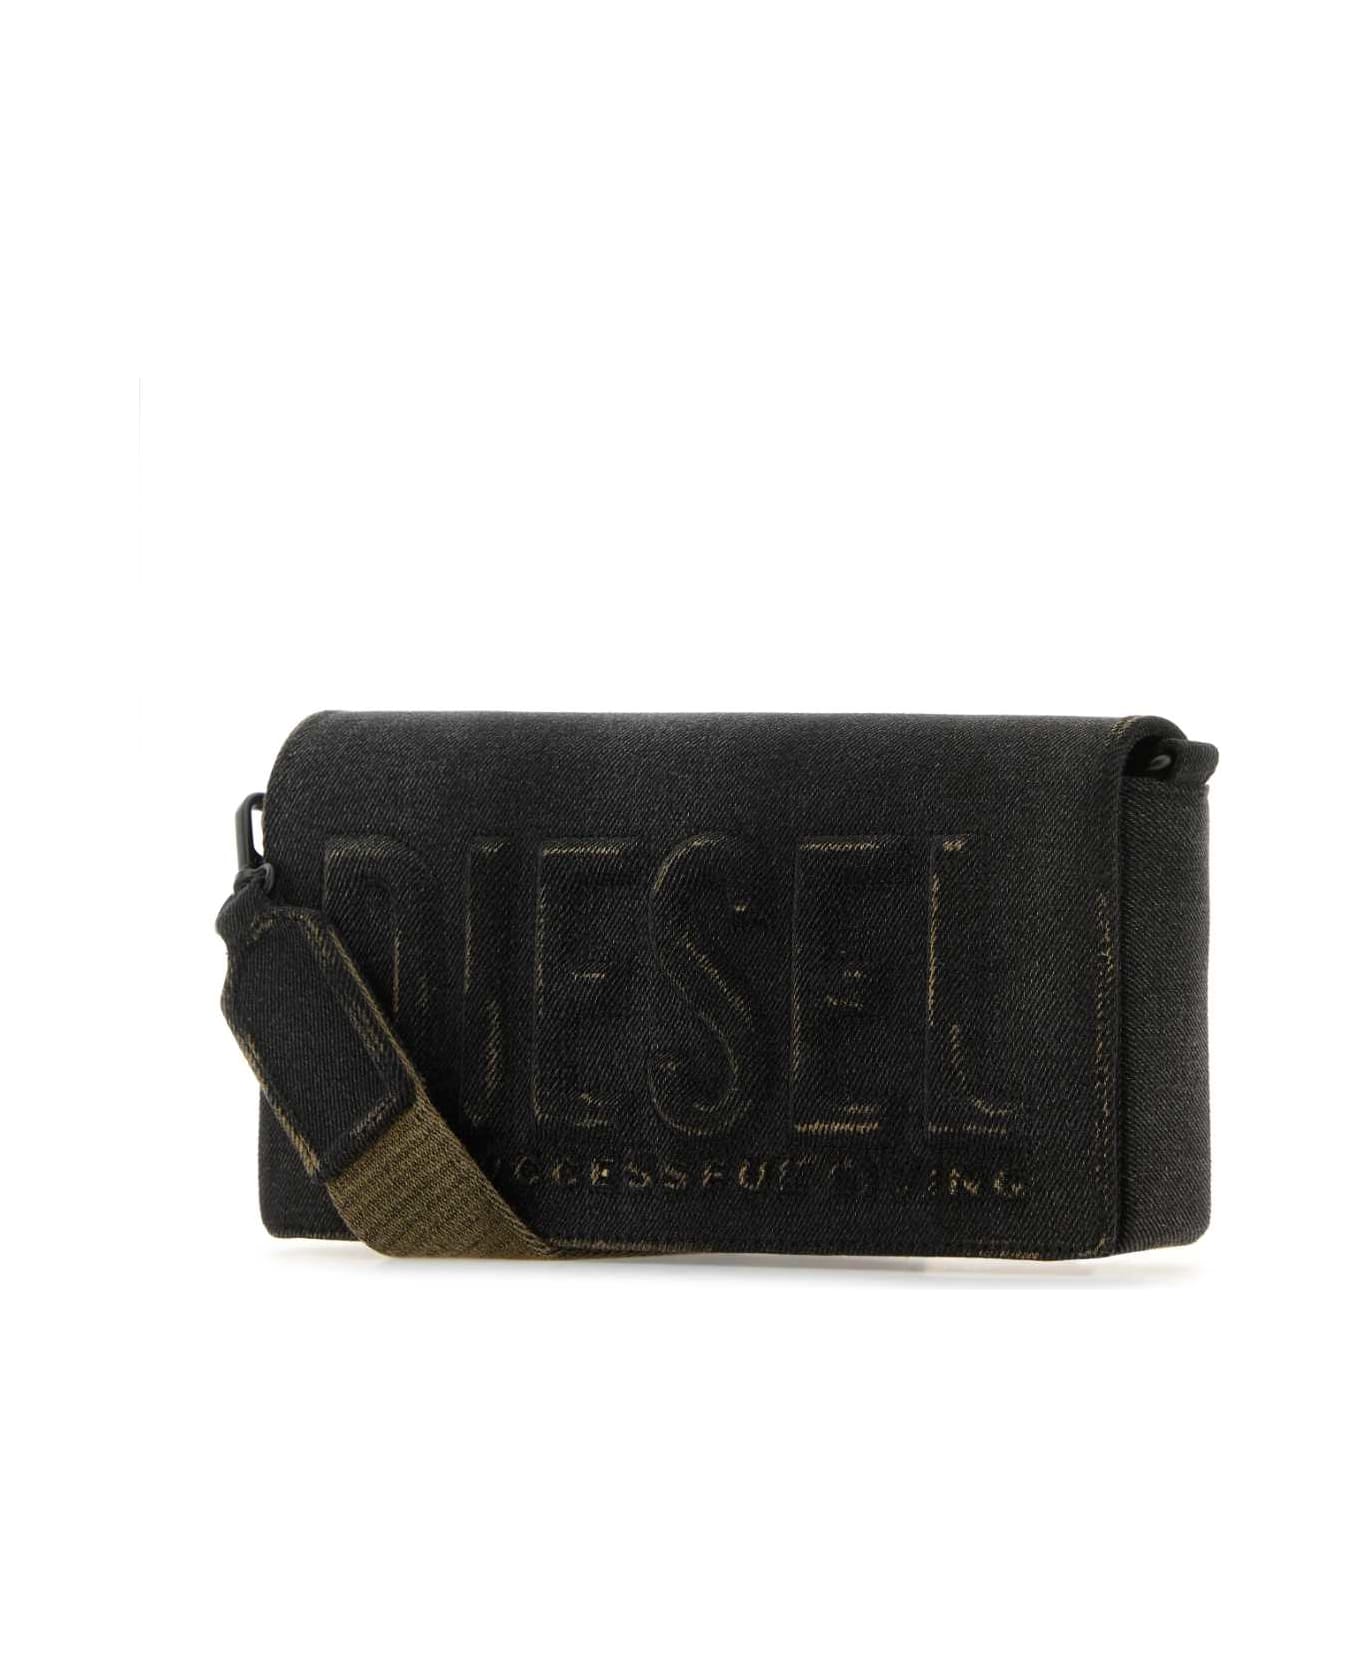 Diesel Black Denim M Biscotto Crossbody Bag - T8013